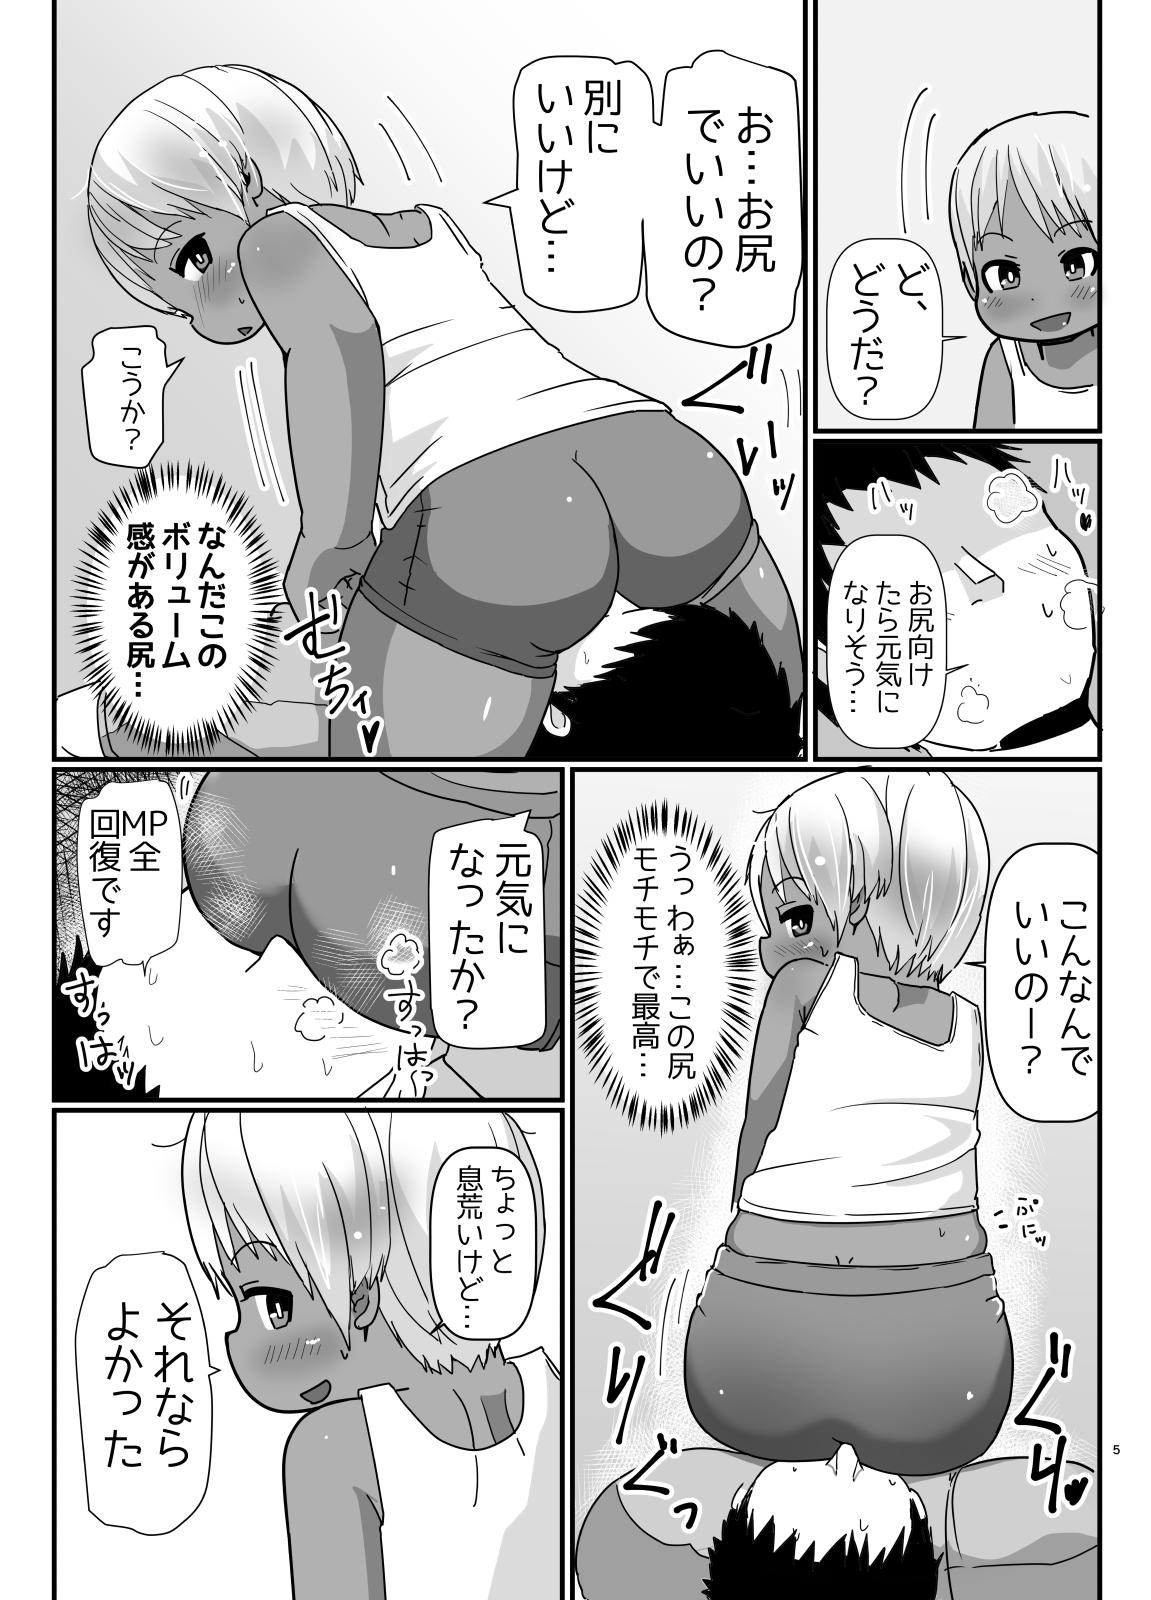 Bunny Cos no Kasshokukko♂ ga Genkidzukete Kureru Manga 3